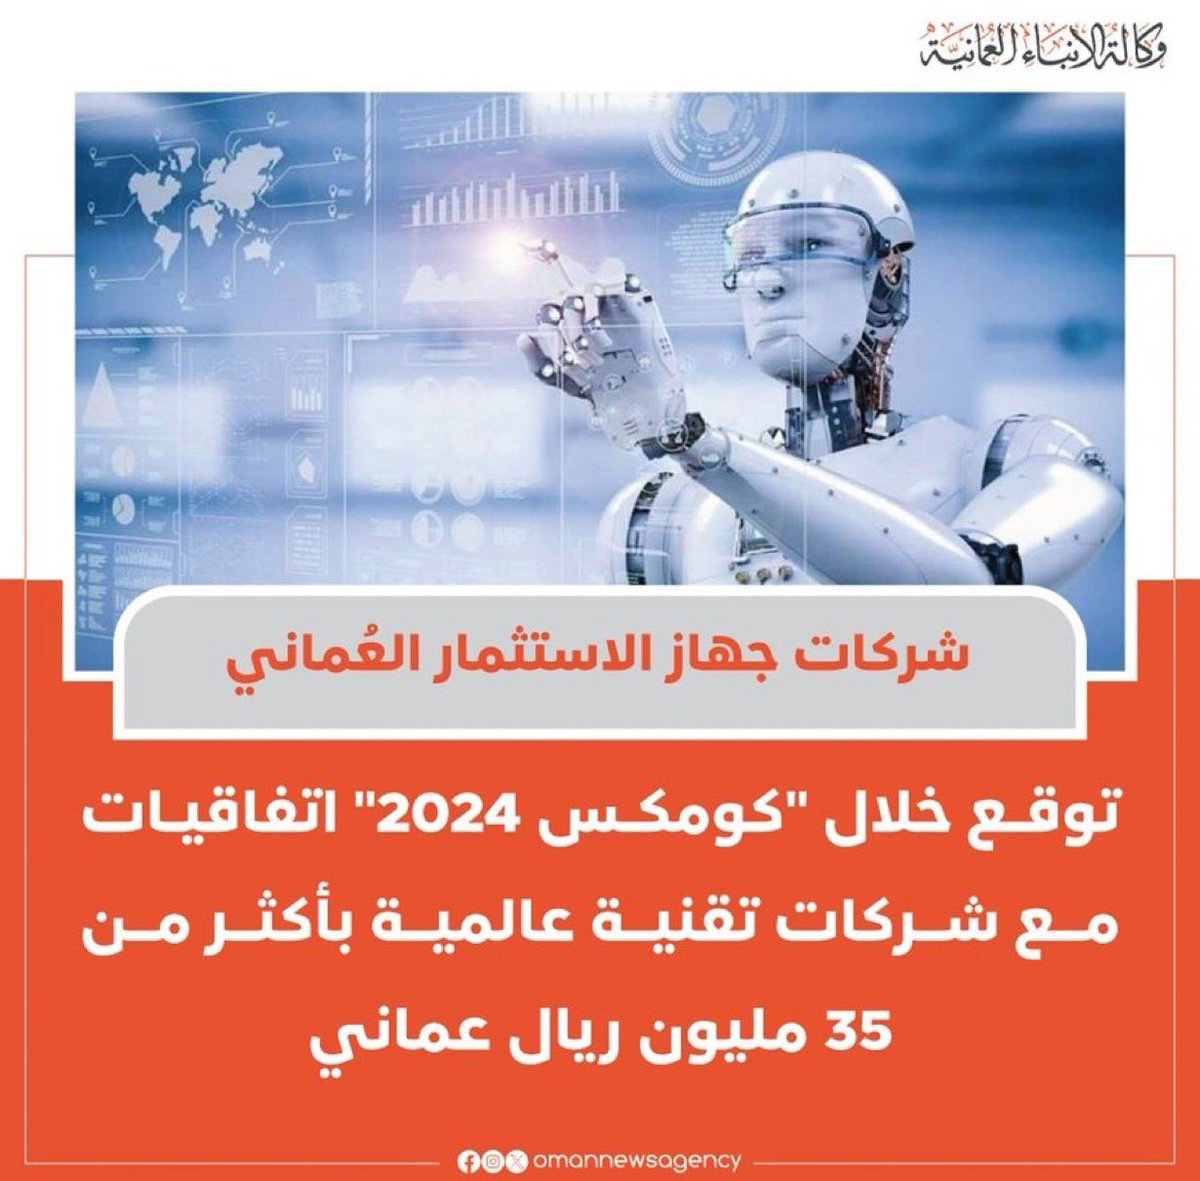 شركات جهاز الاستثمار العماني توقع خلال'كومكس2024' اتفاقيات مع شركات عالمية بأكثر من 35 مليون ريال عماني #سلطنة_عُمان